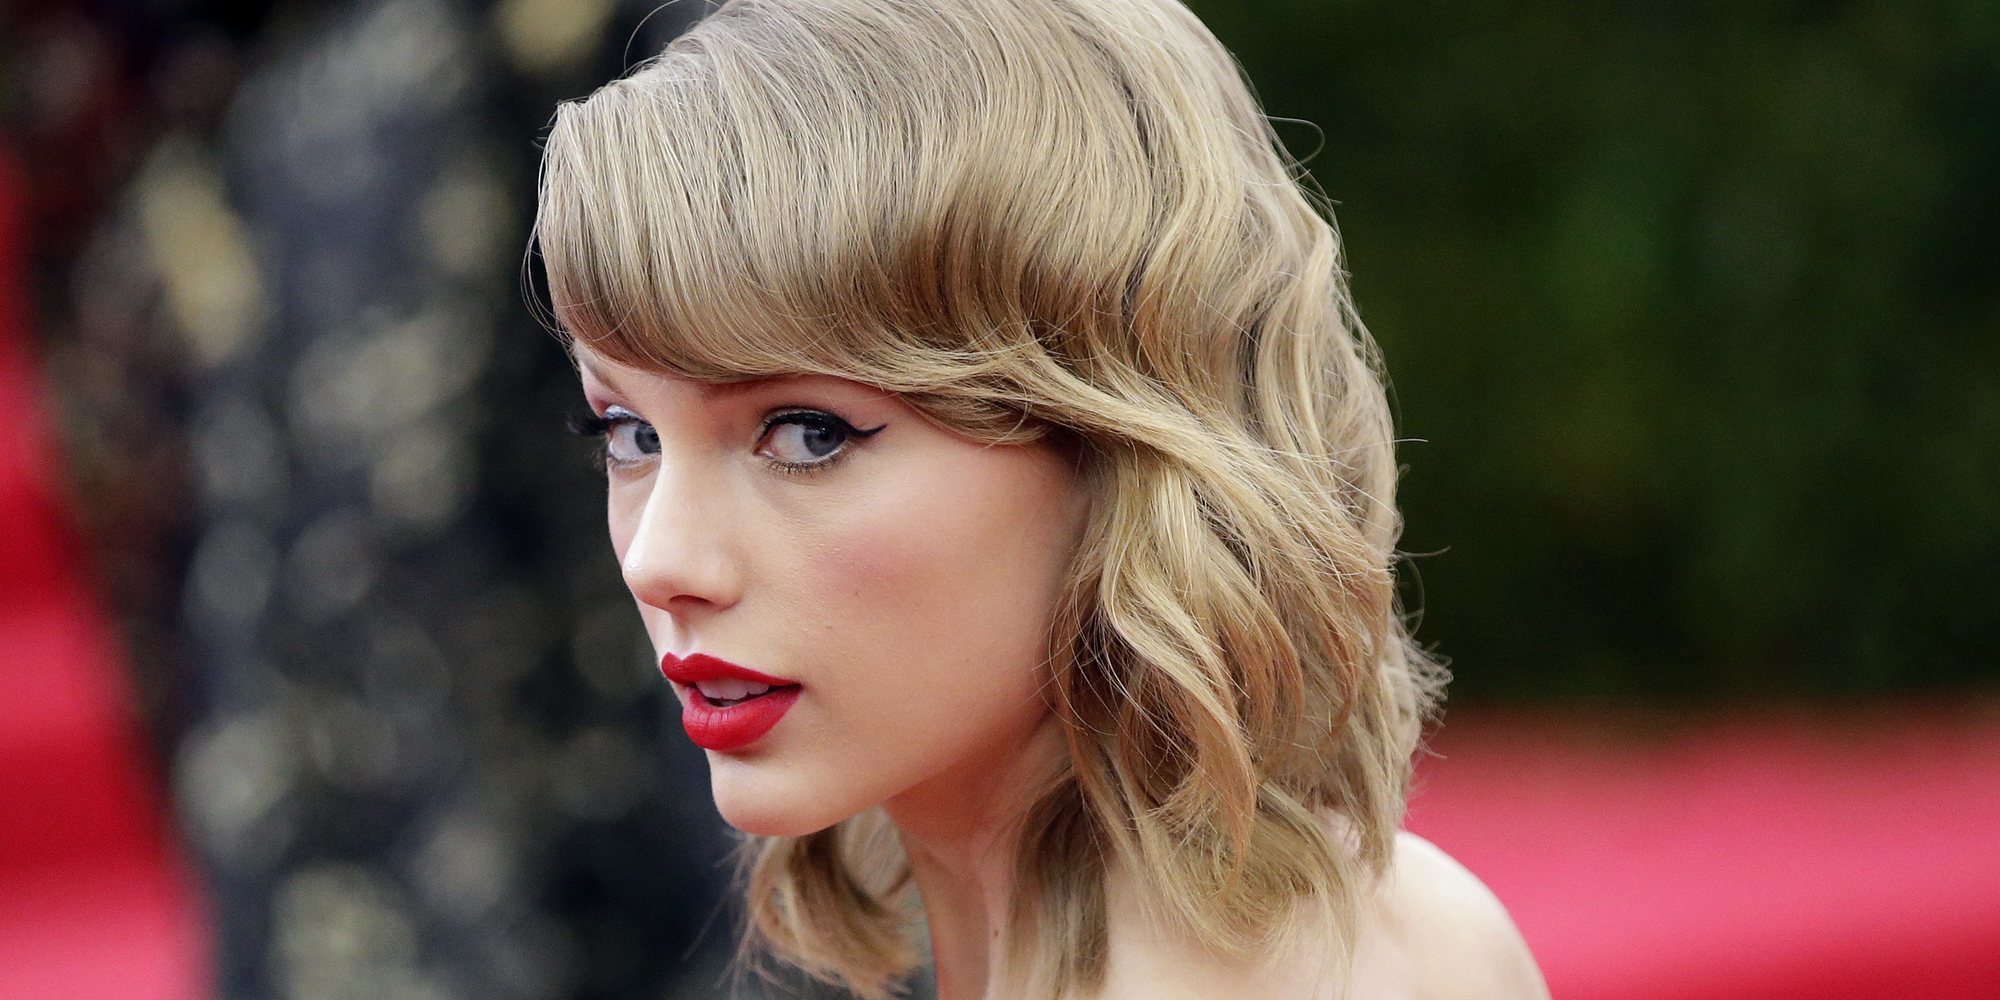 Taylor Swift regrabará todos sus discos para recuperar los derechos tras la compra de Scooter Braun